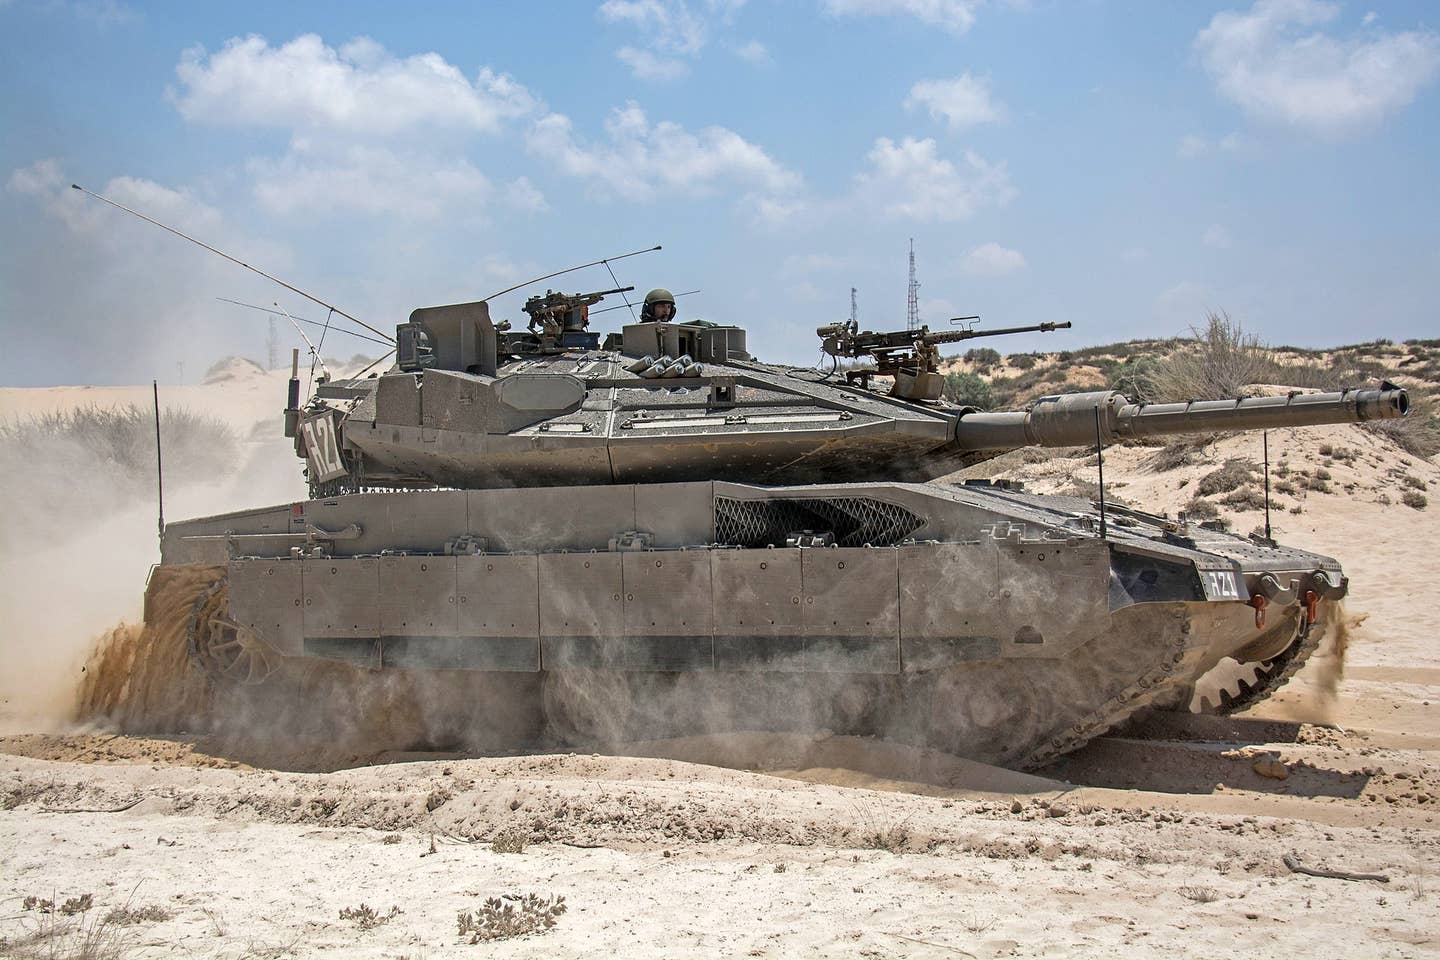 Trophy APS mounted on Israeli tank.